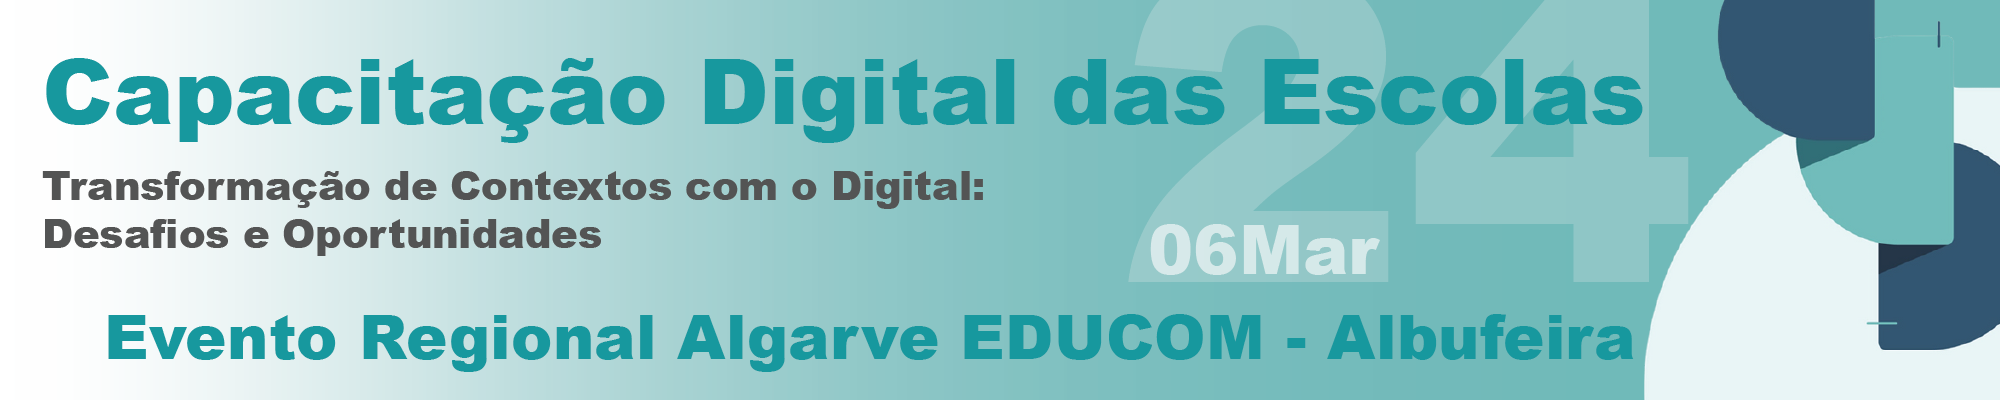 Capacitação Digital das Escolas